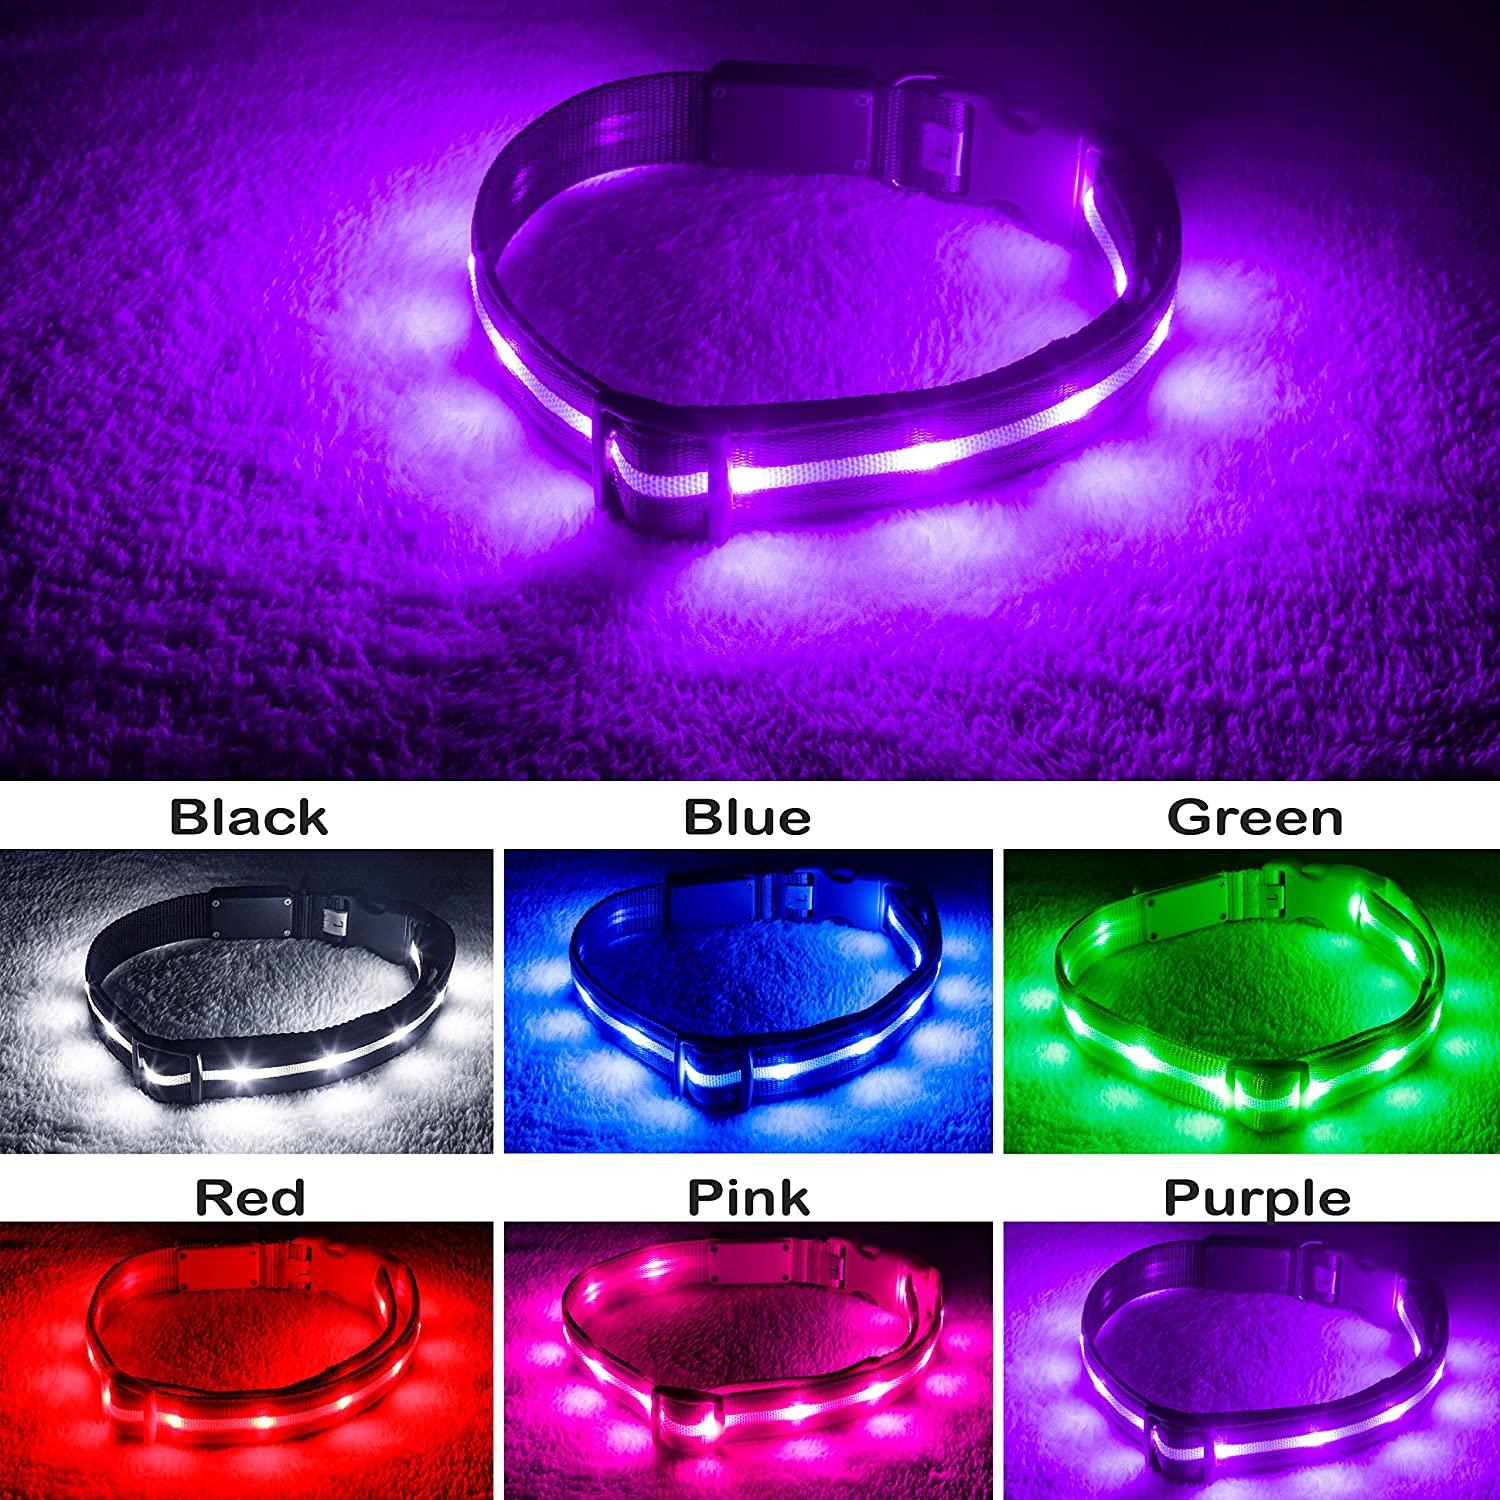  Blazin' Bison Seguridad LED Collar de perro - USB recargable con luz violeta medio intermitente resistente al agua 